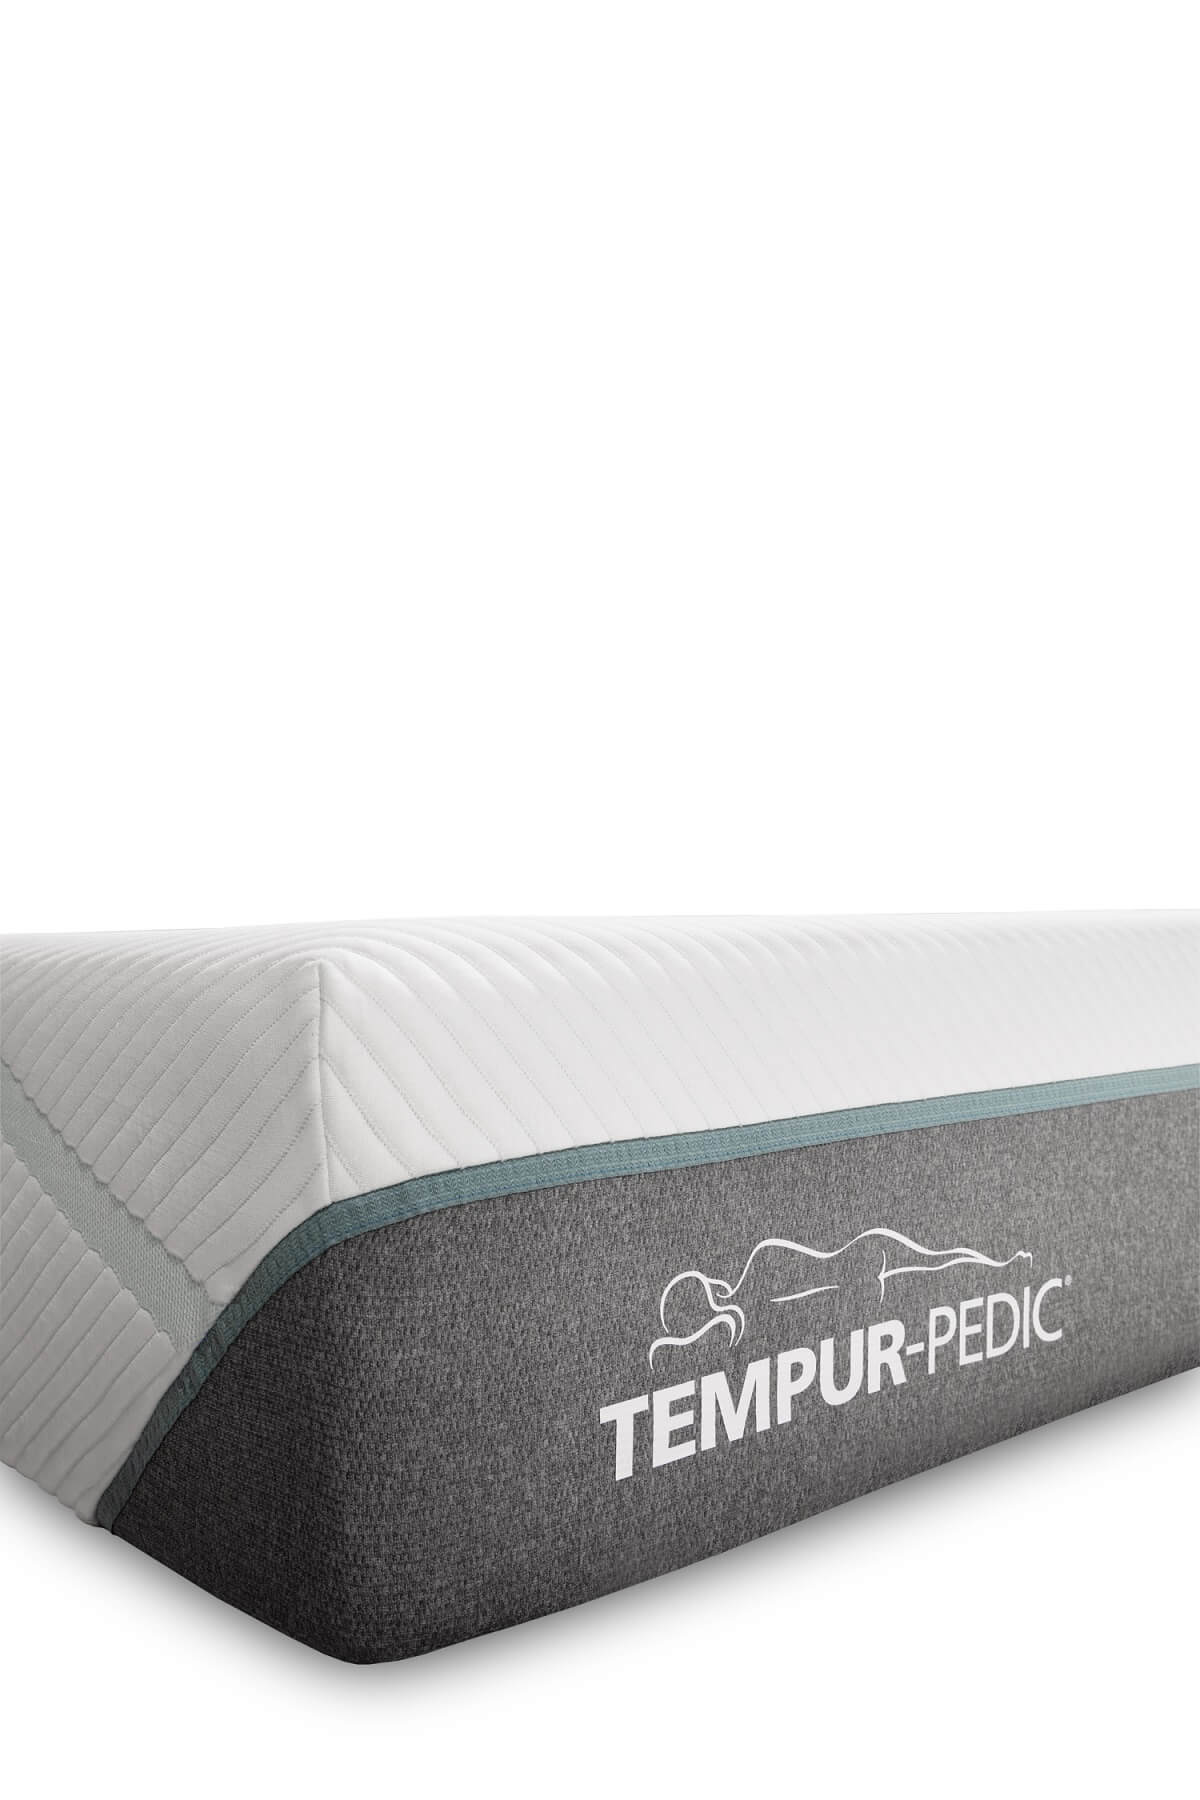 Buy Tempur-Pedic Tempur-Adapt Medium Mattress